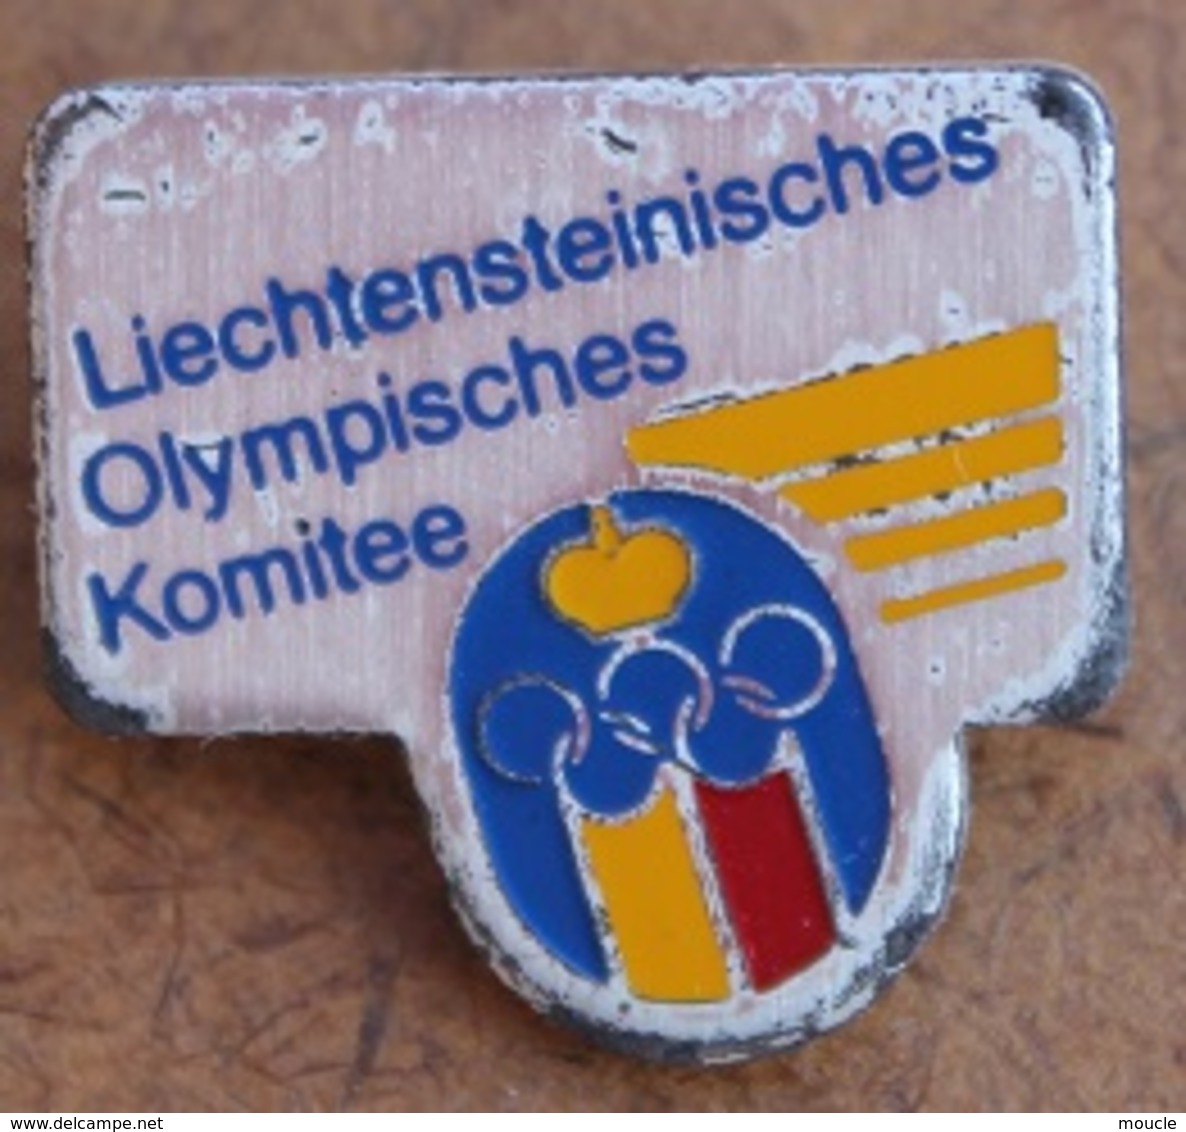 ATTENTION C'EST UNE BROCHE - SPINDEL - BROOCH -  JEUX OLYMPIQUES -  LIECHTENSTEINISCHES OLYMPISCHES KOMITEE - Olympic Games